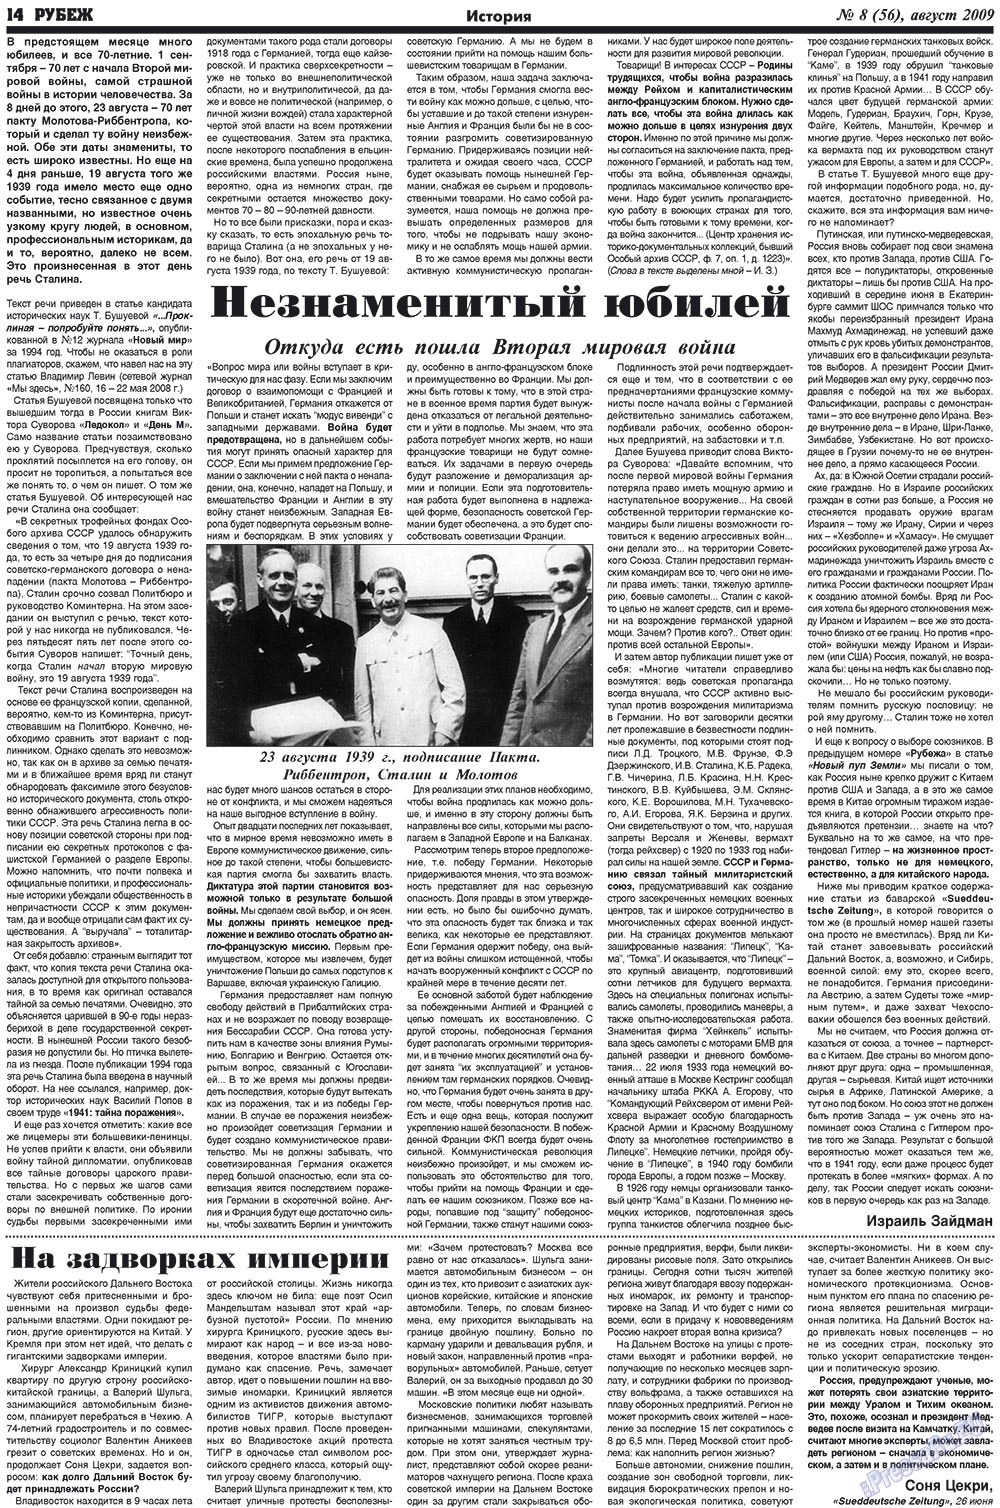 Рубеж (газета). 2009 год, номер 8, стр. 14